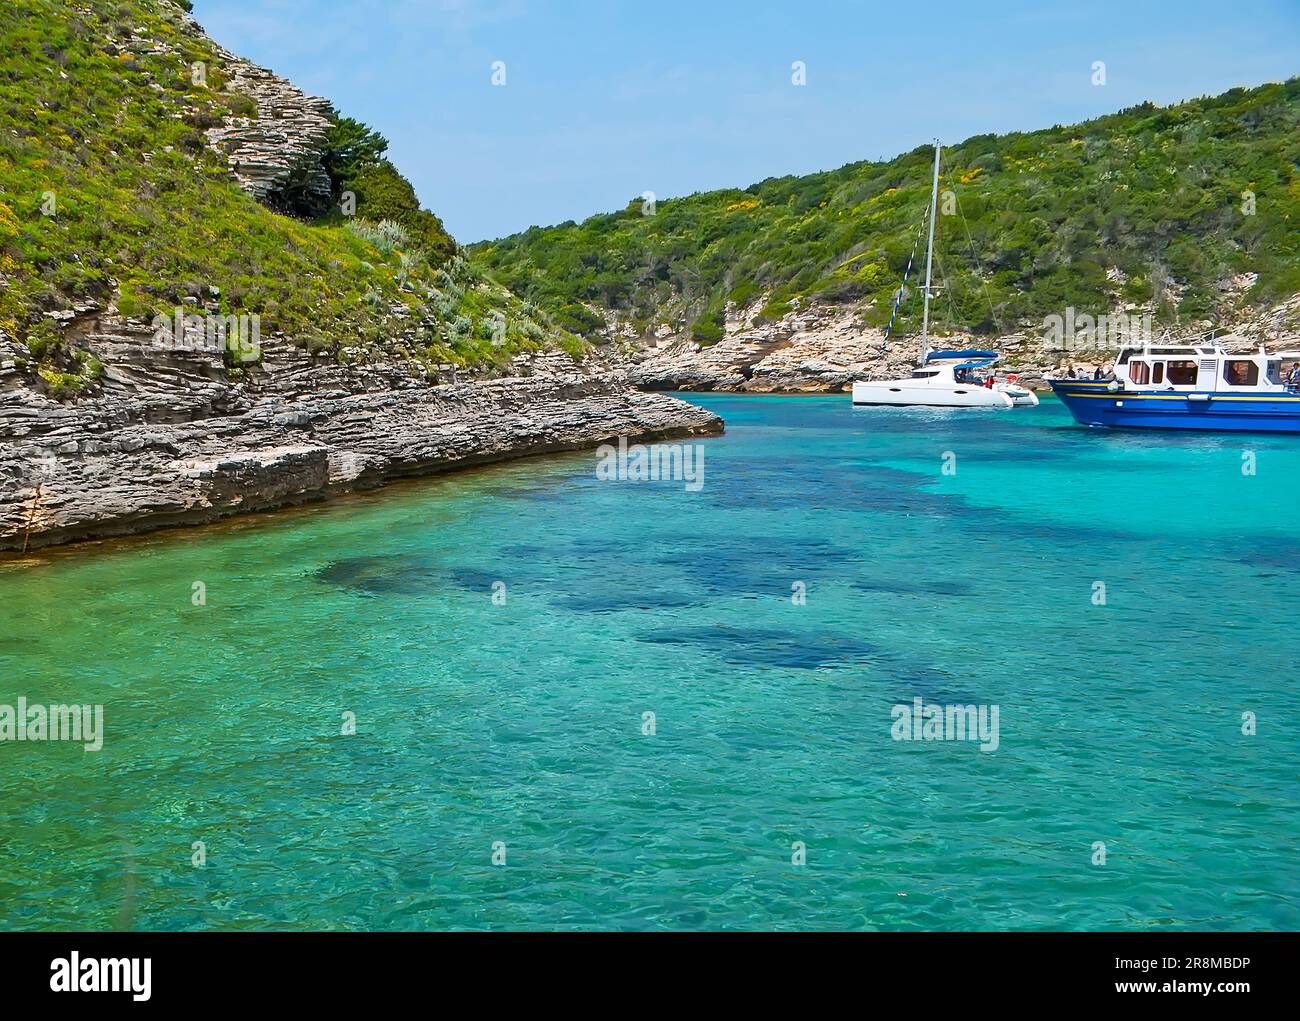 Il minuscolo porto di conchiglie della spiaggia di Arinella è una popolare destinazione turistica tra i visitatori di Bonifacio, Corsica, Francia Foto Stock